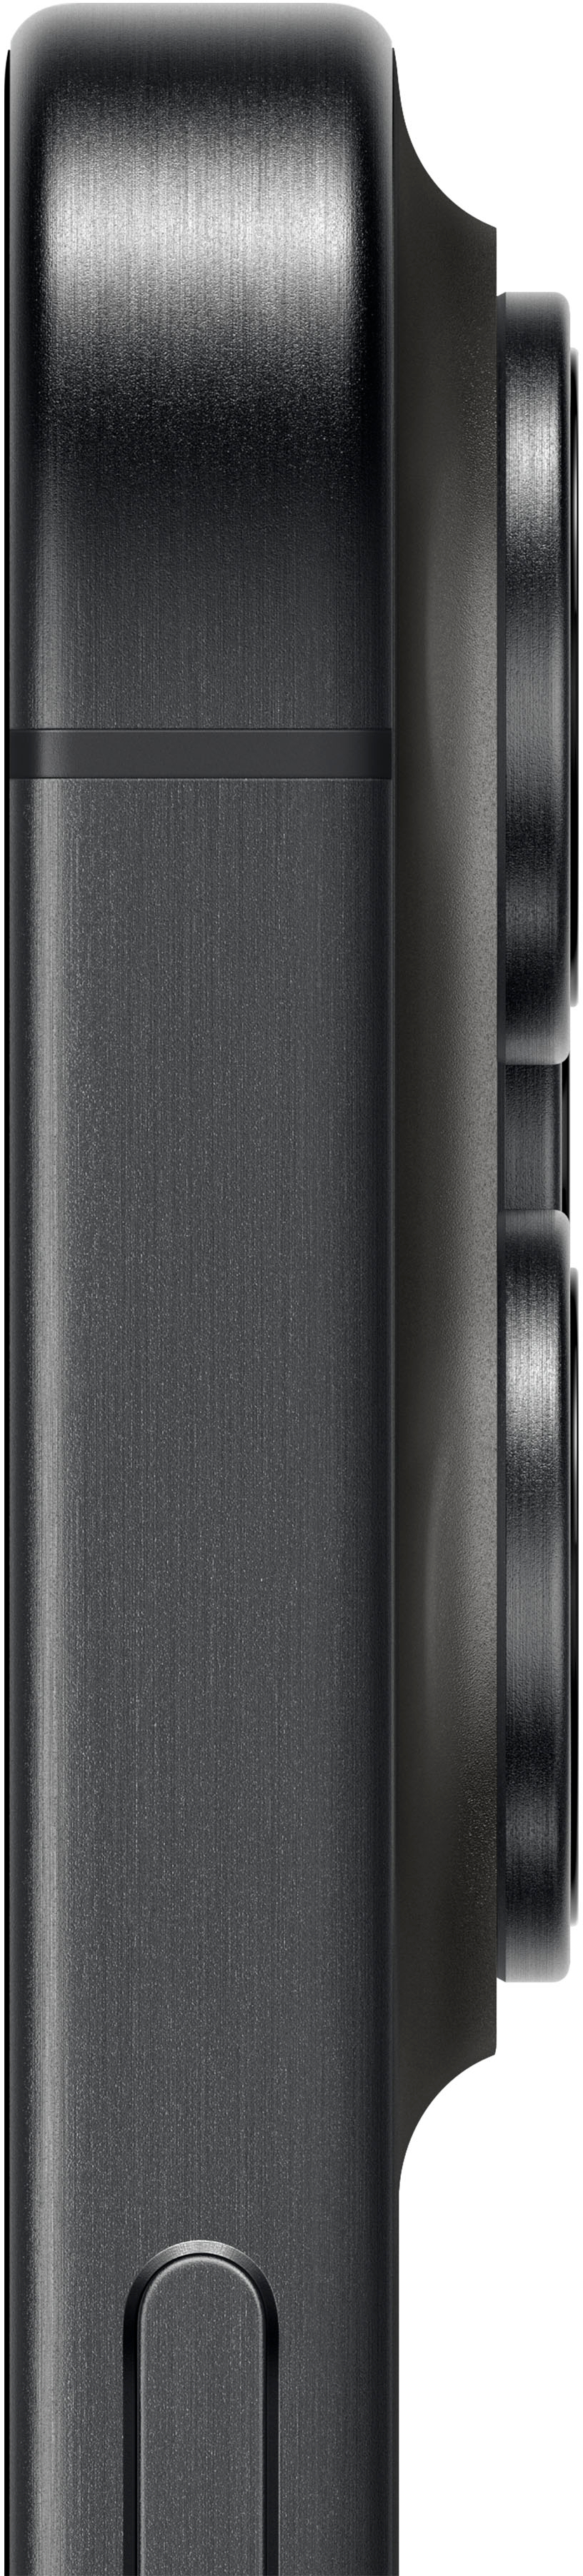 Black Apple iPhone 15 Pro Max 512GB (White Titanium) at best price in Salem